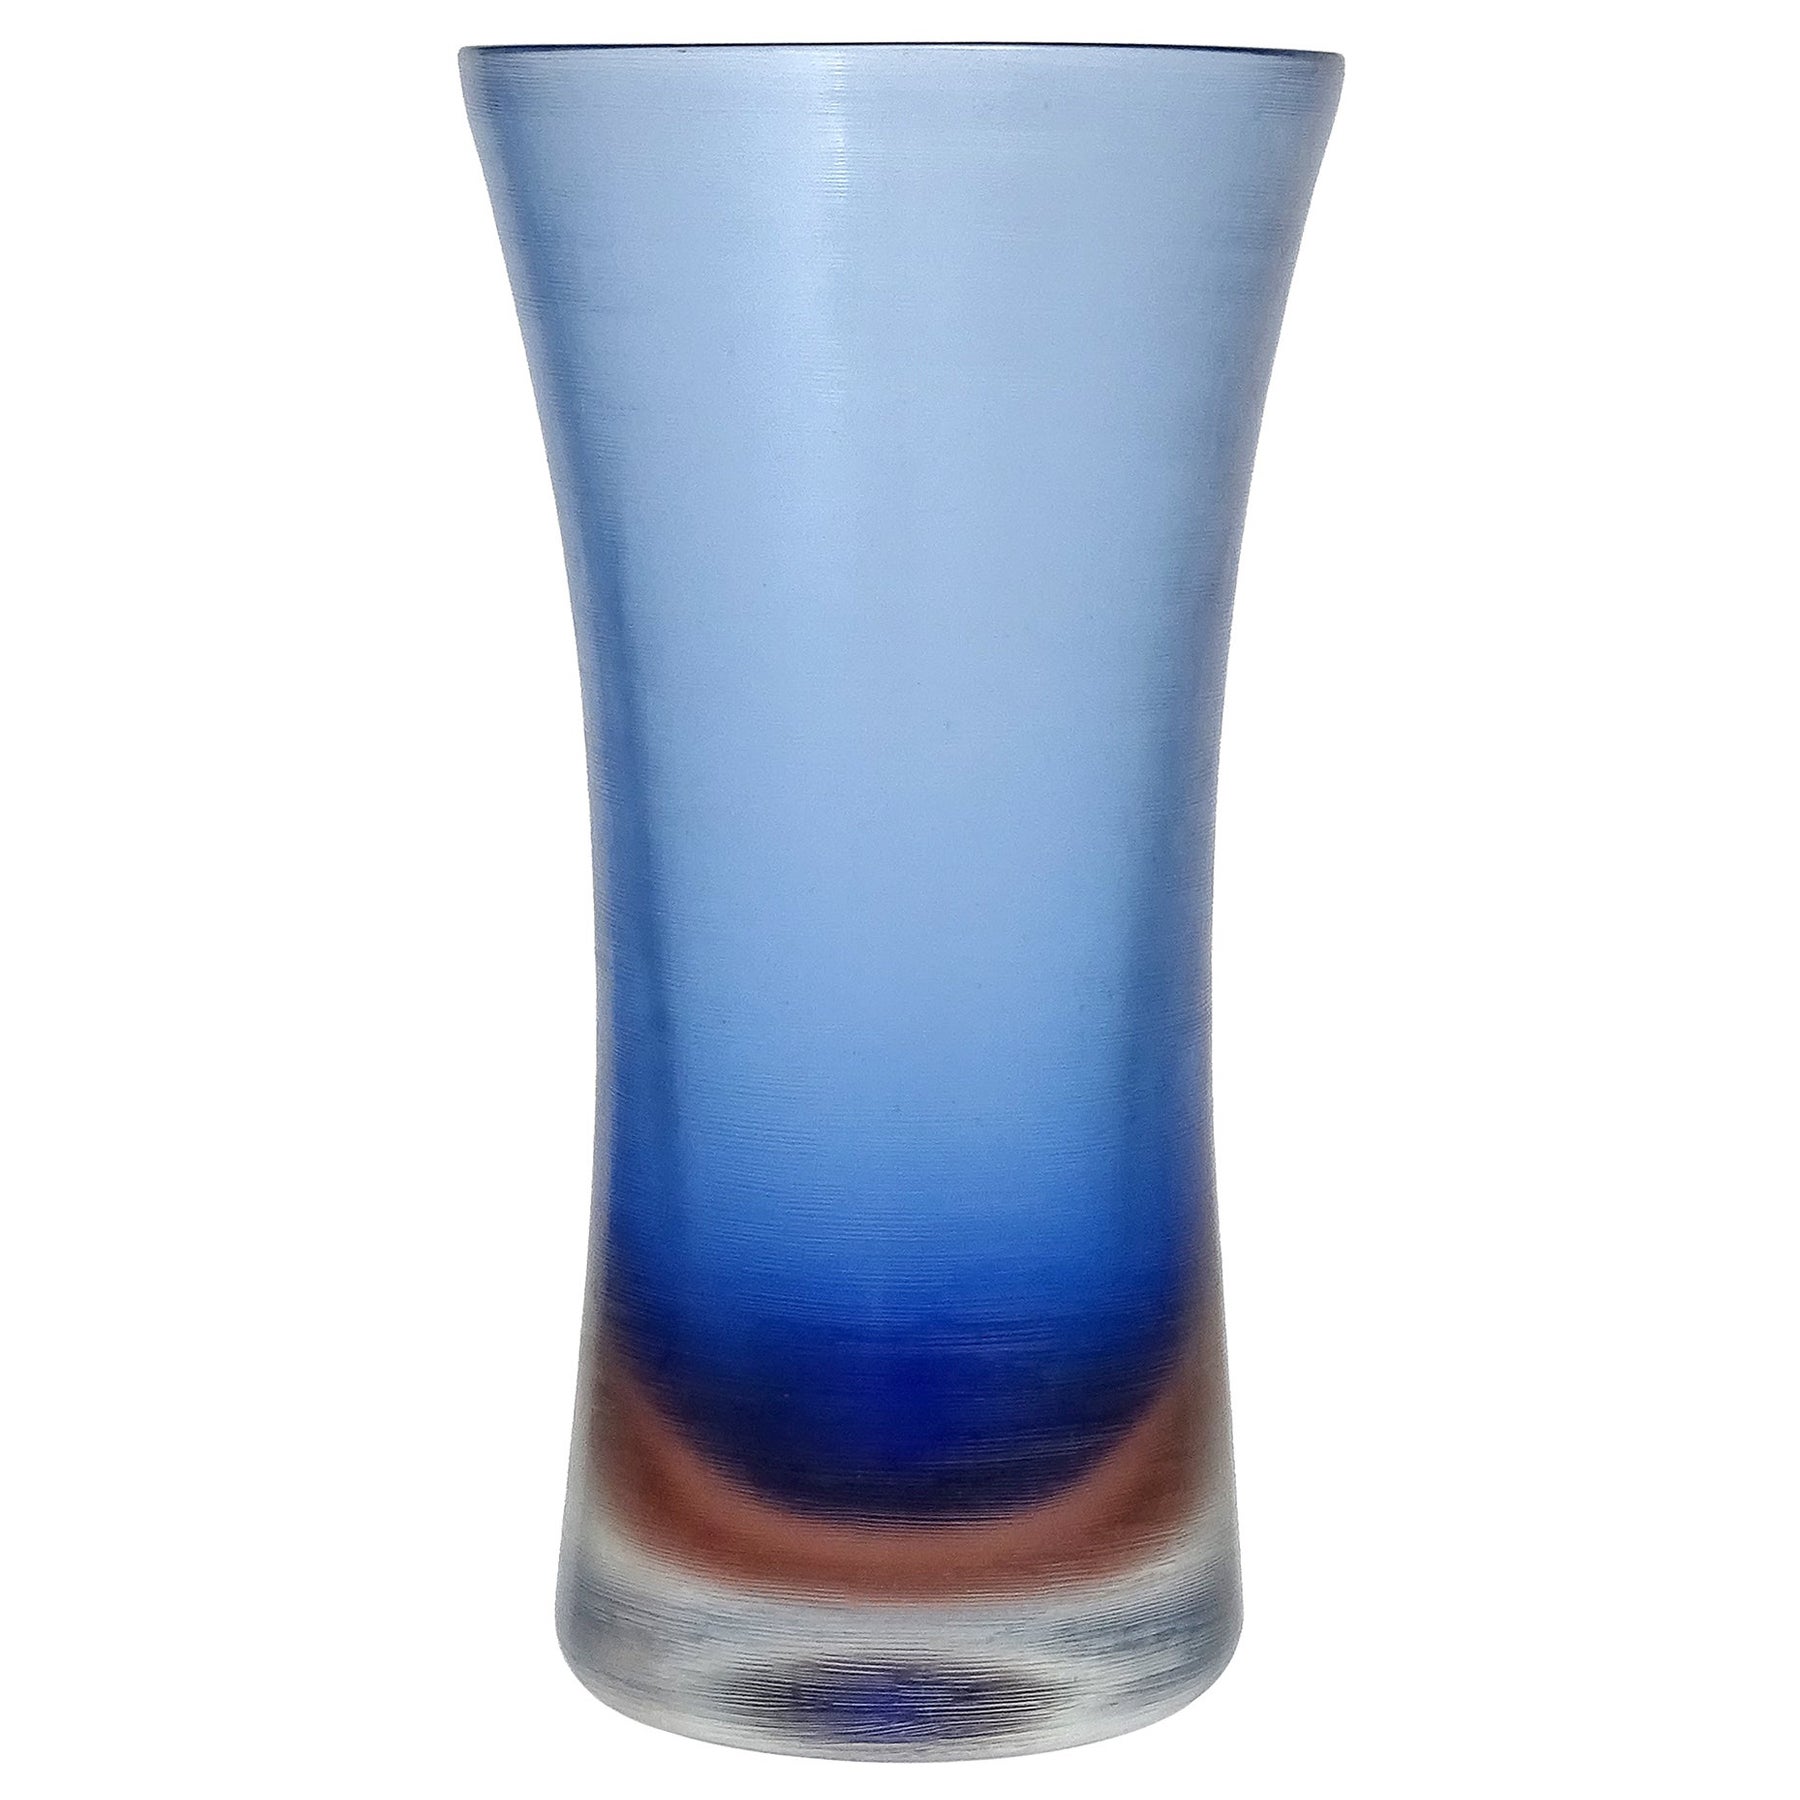 Paolo Venini Murano signiert blau Inciso Technik italienische Kunst Glas Blume Vase